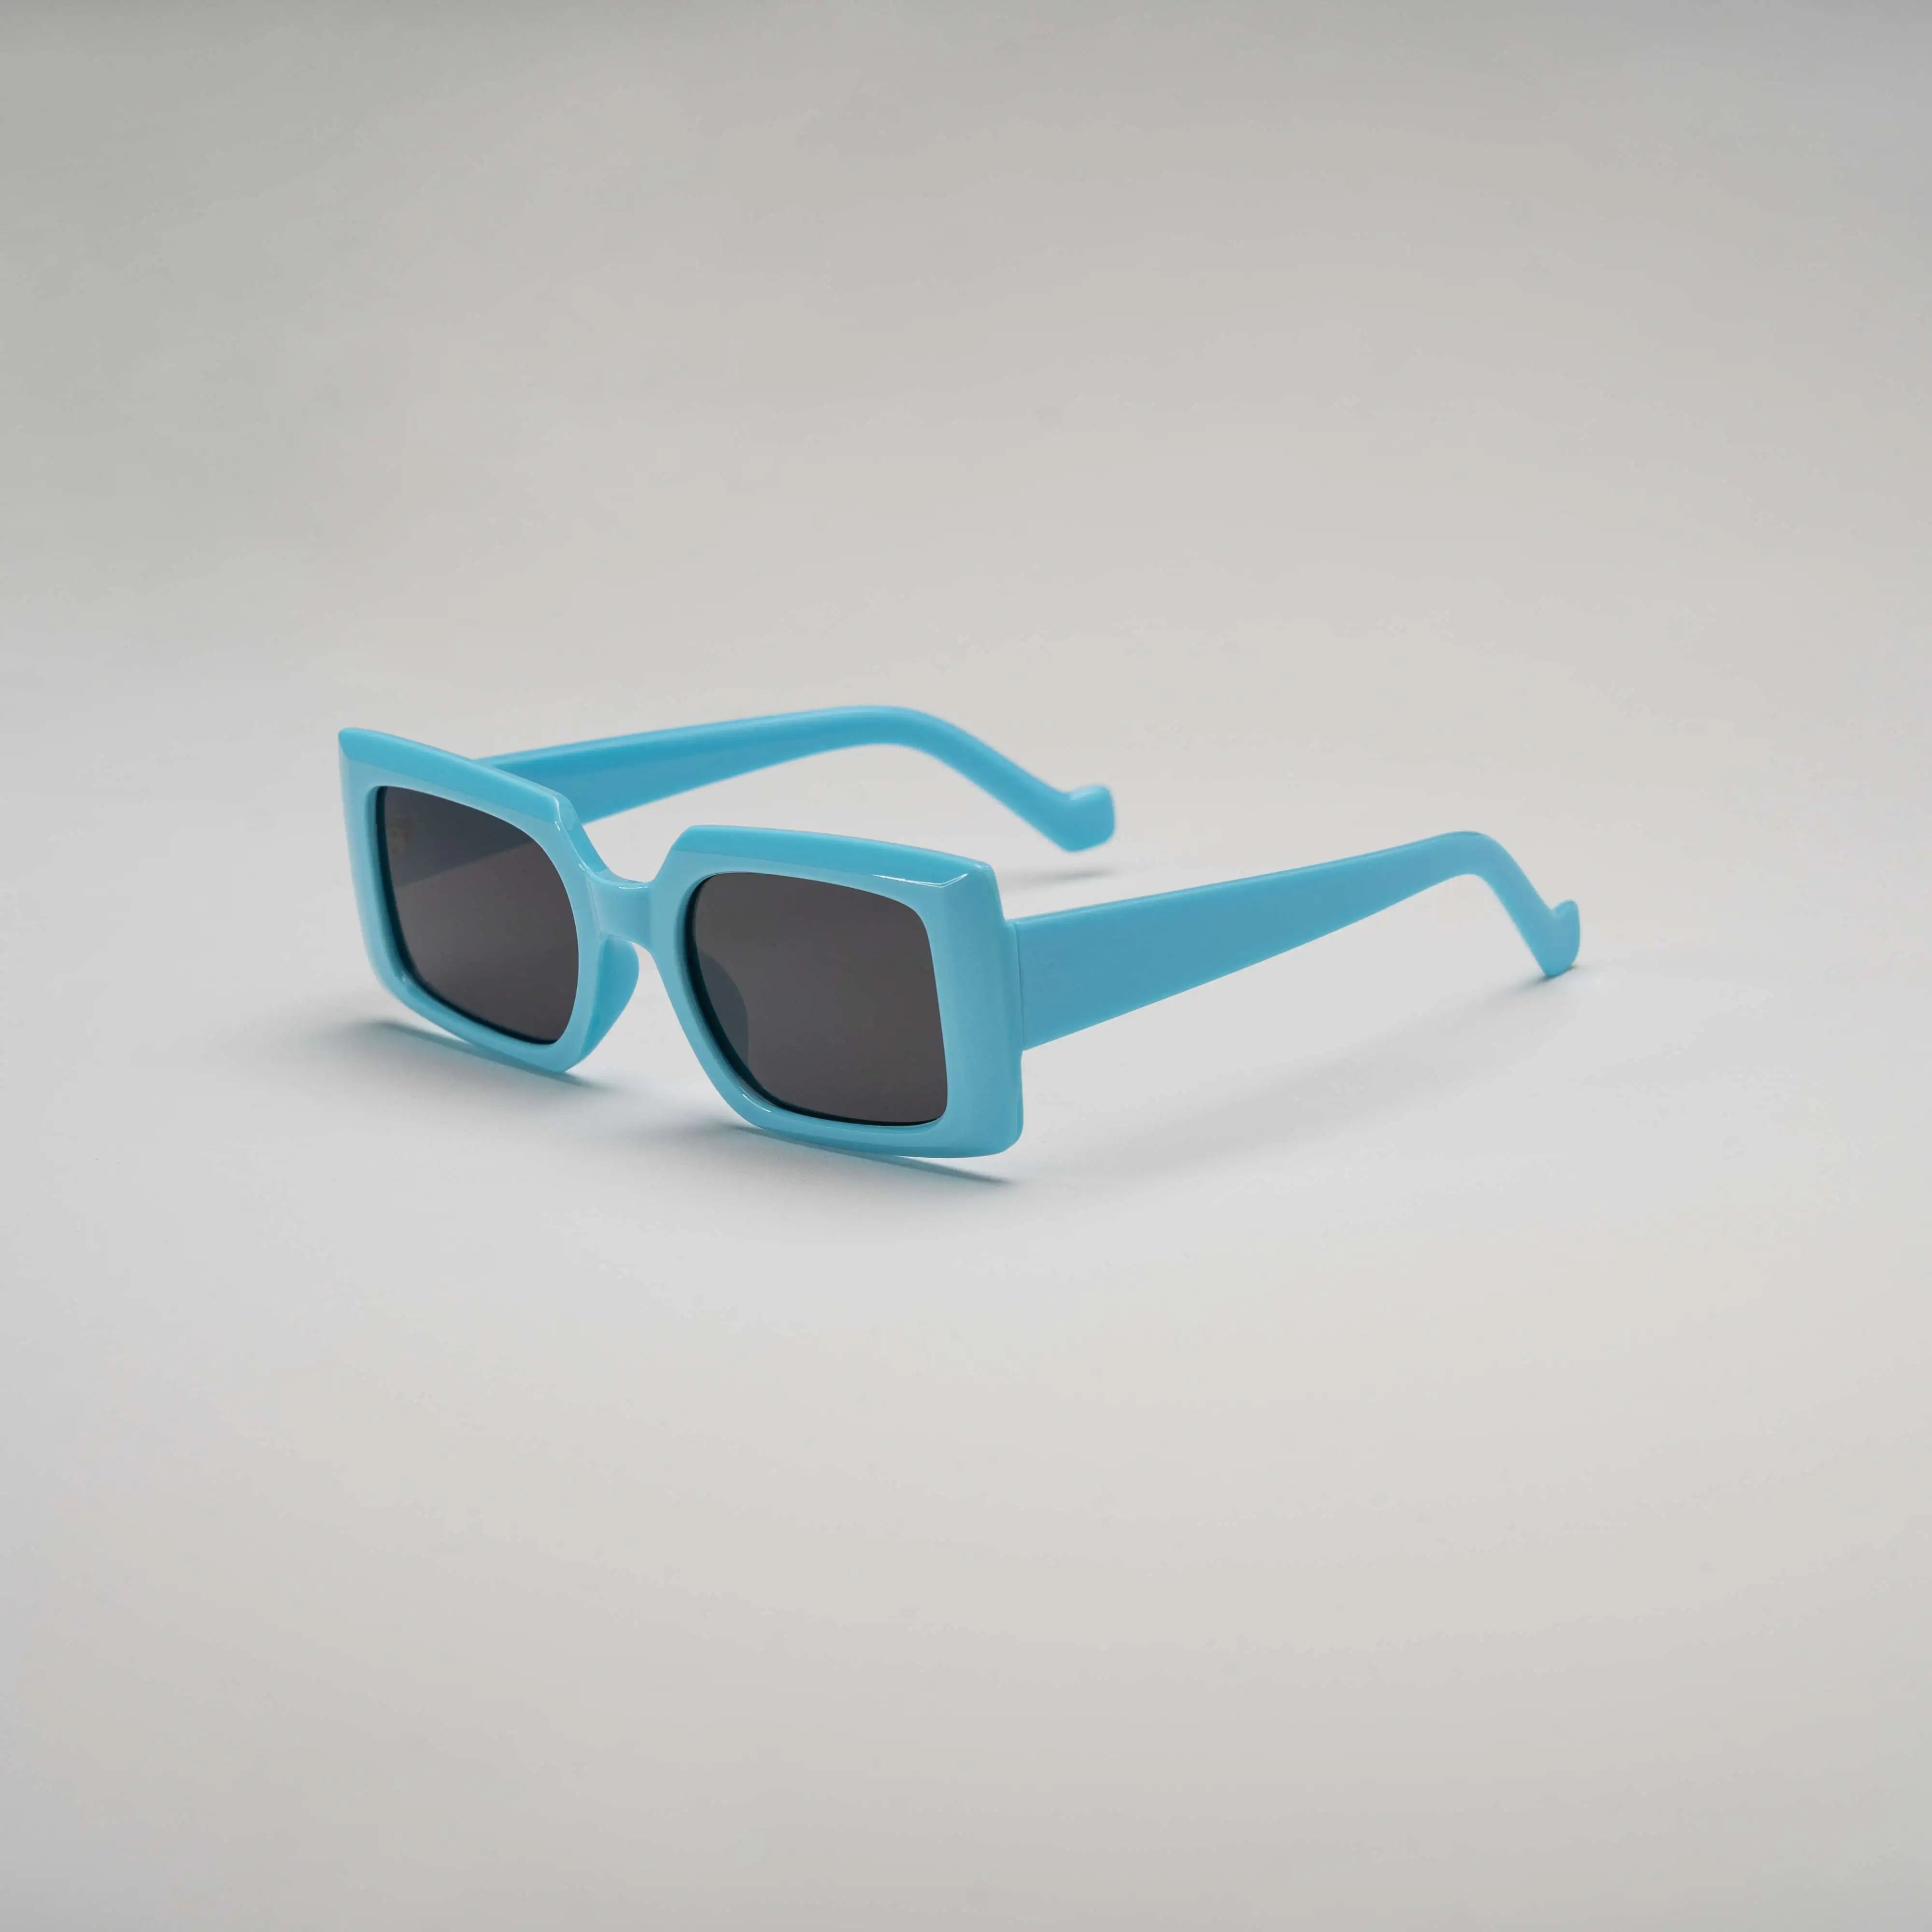 'Liquid Luv' Retro Square Sunglasses in Blue & Black